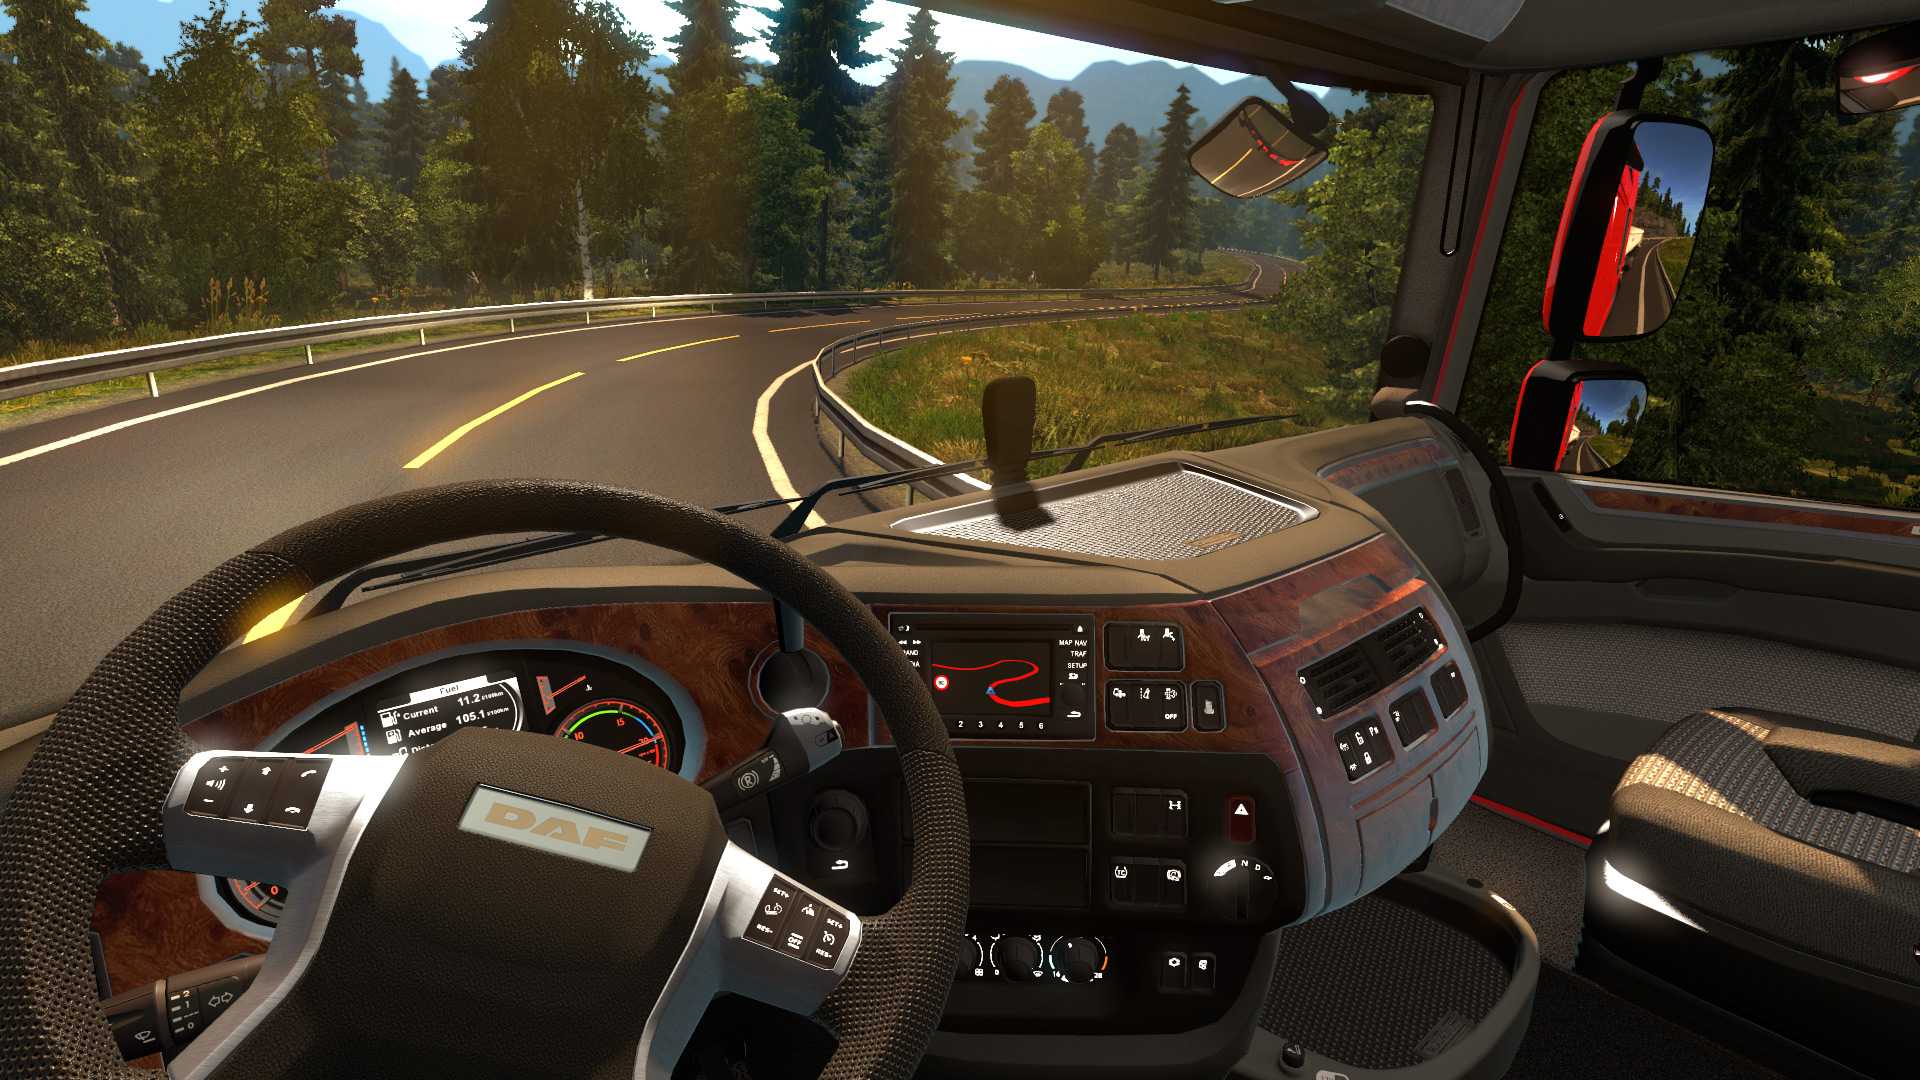 Euro truck simulator 2 скачать без торрента на пк бесплатно прямой ссылкой